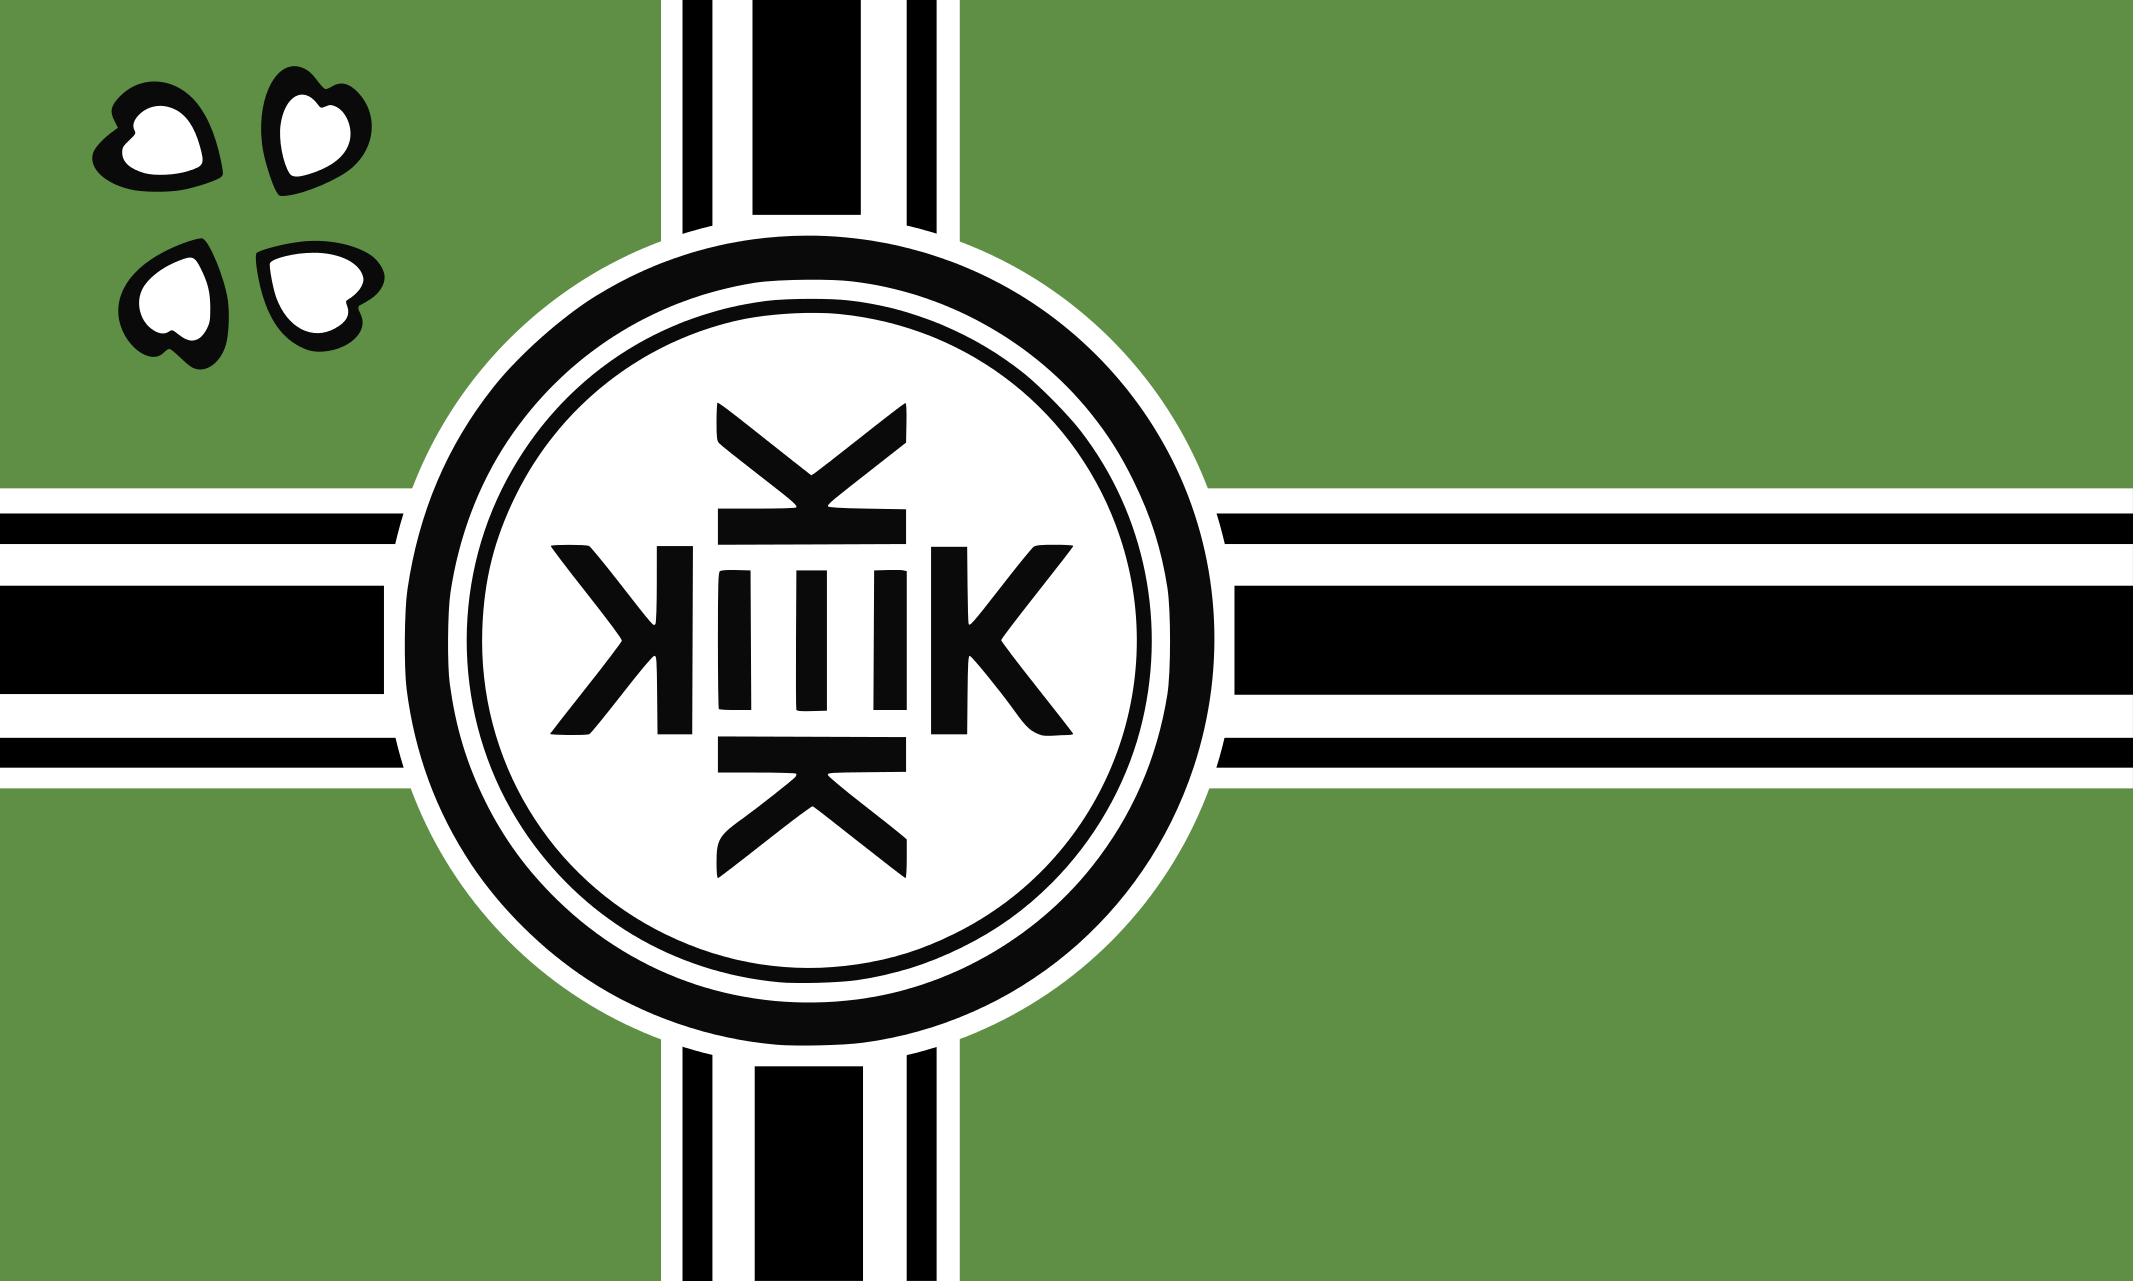 Kekistani_Flag